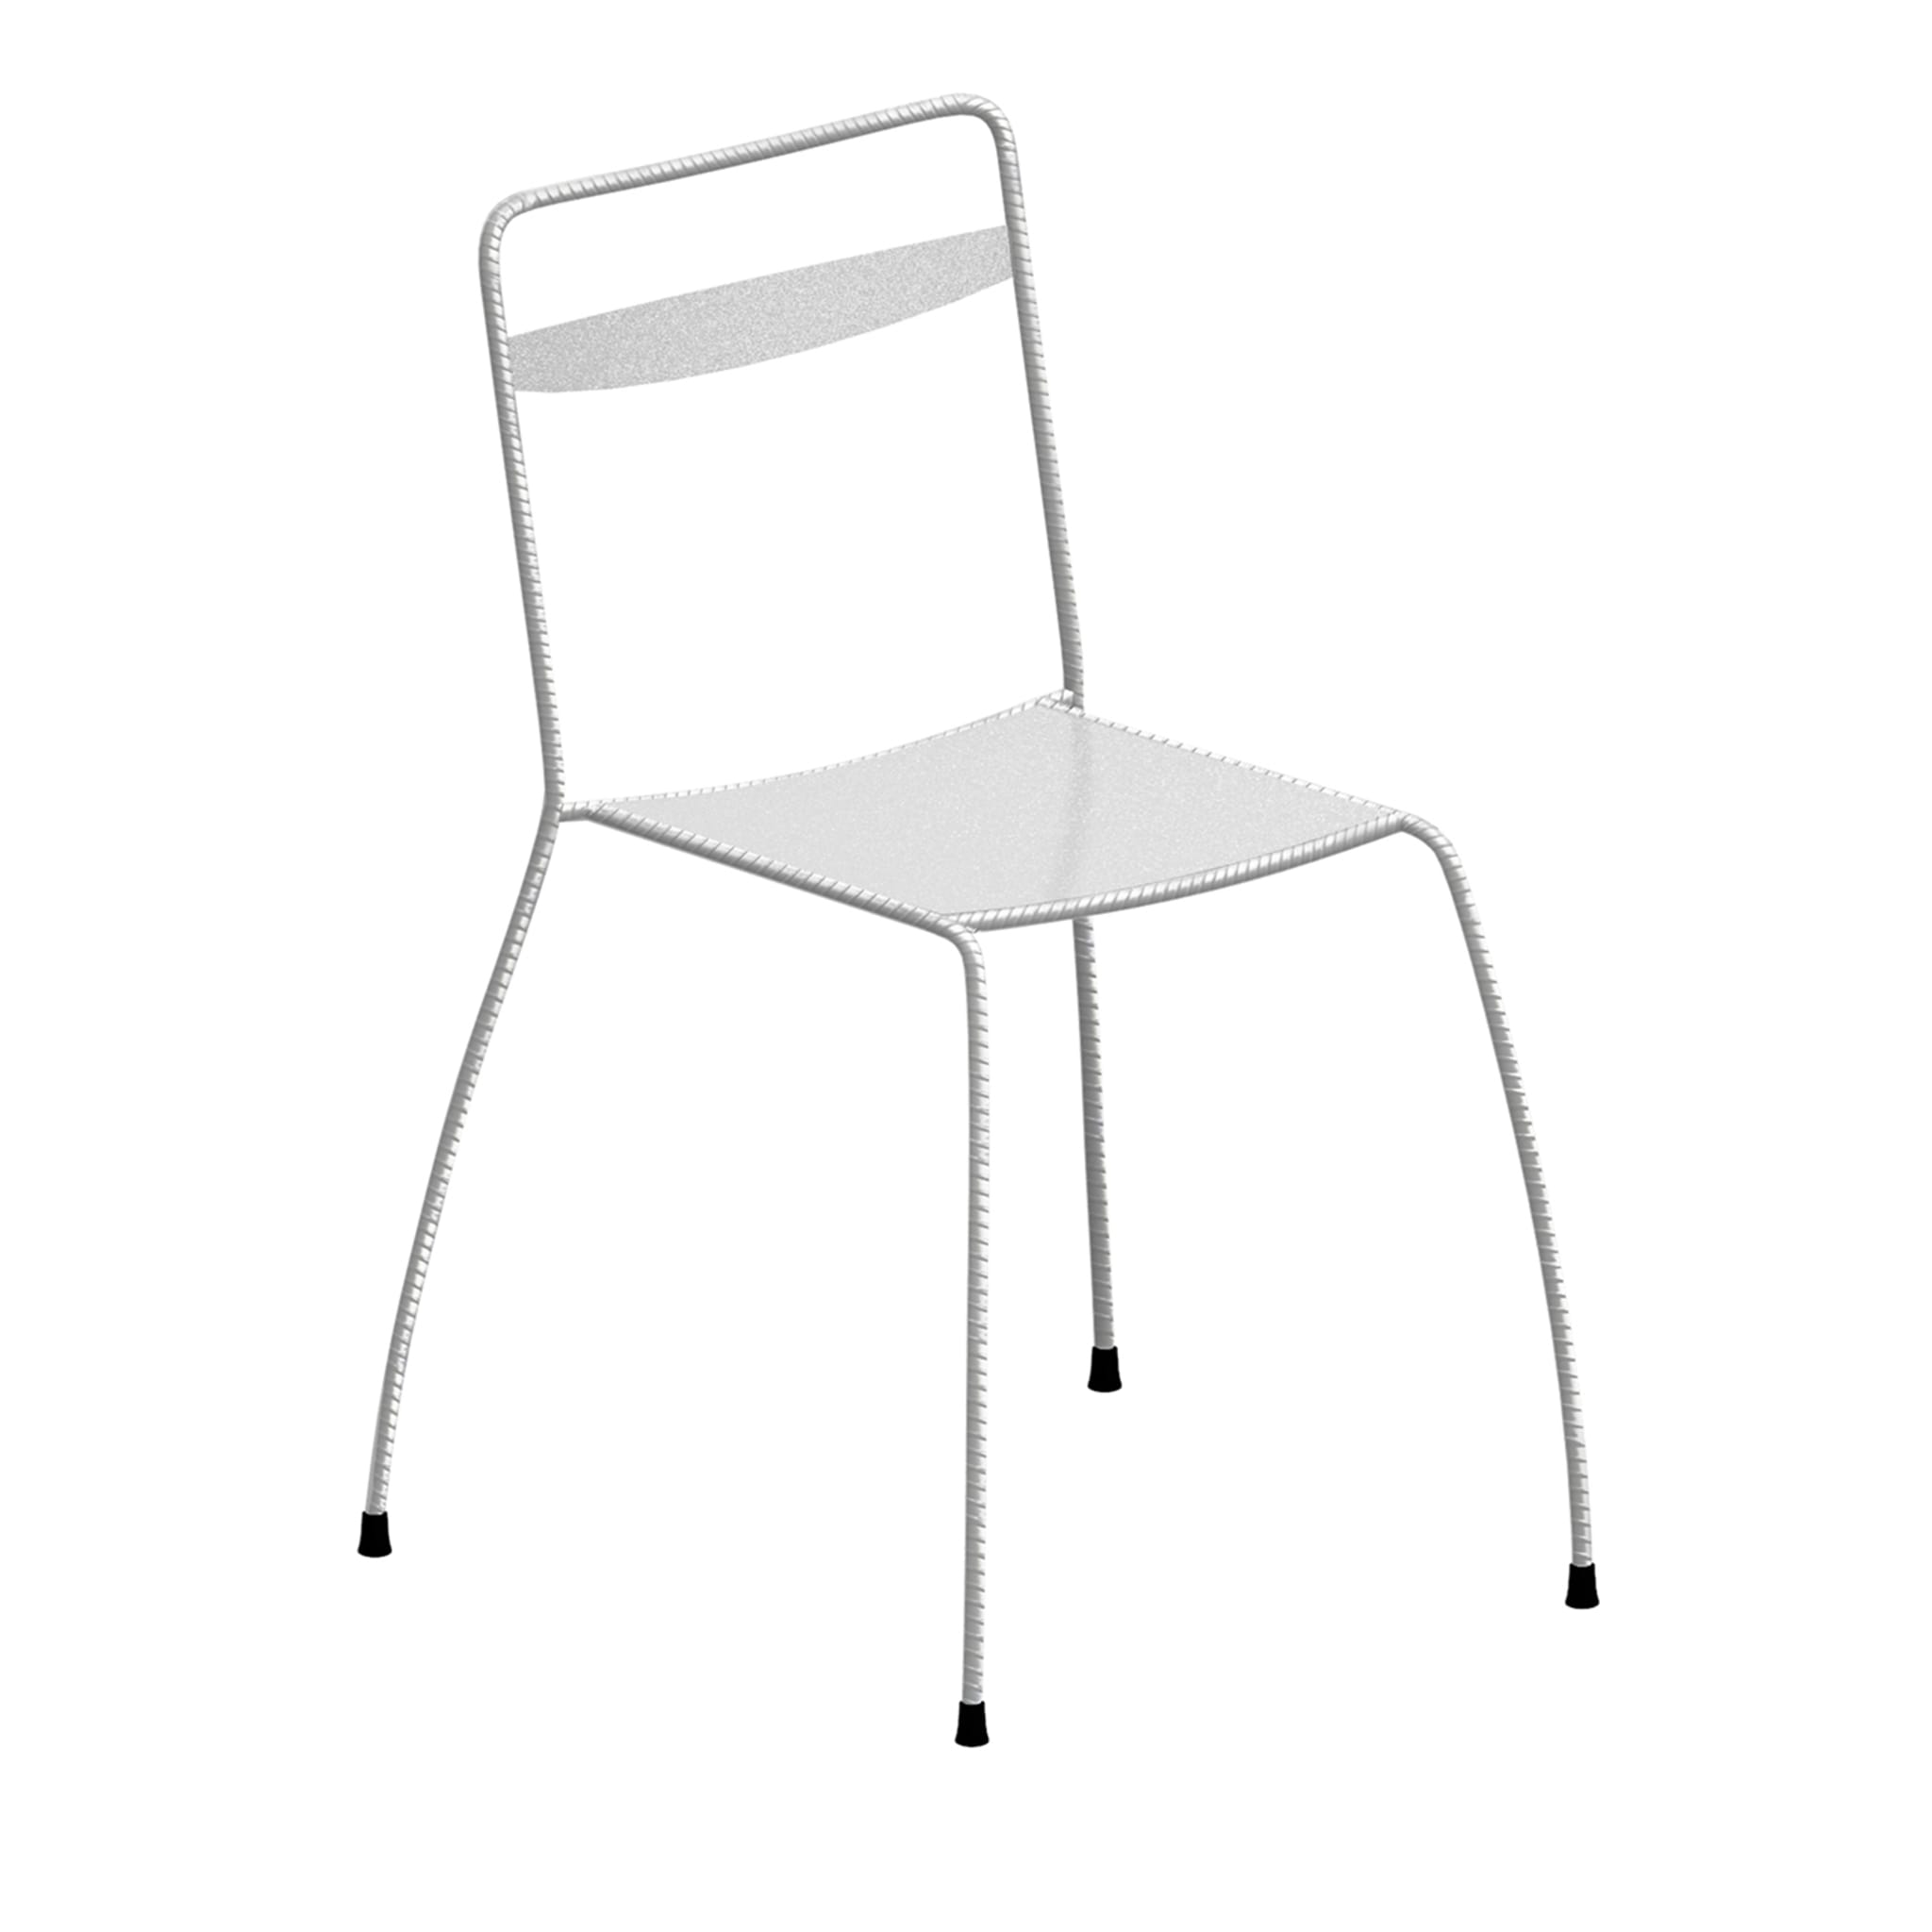 Tondella White Chair by Maurizio Peregalli - Main view